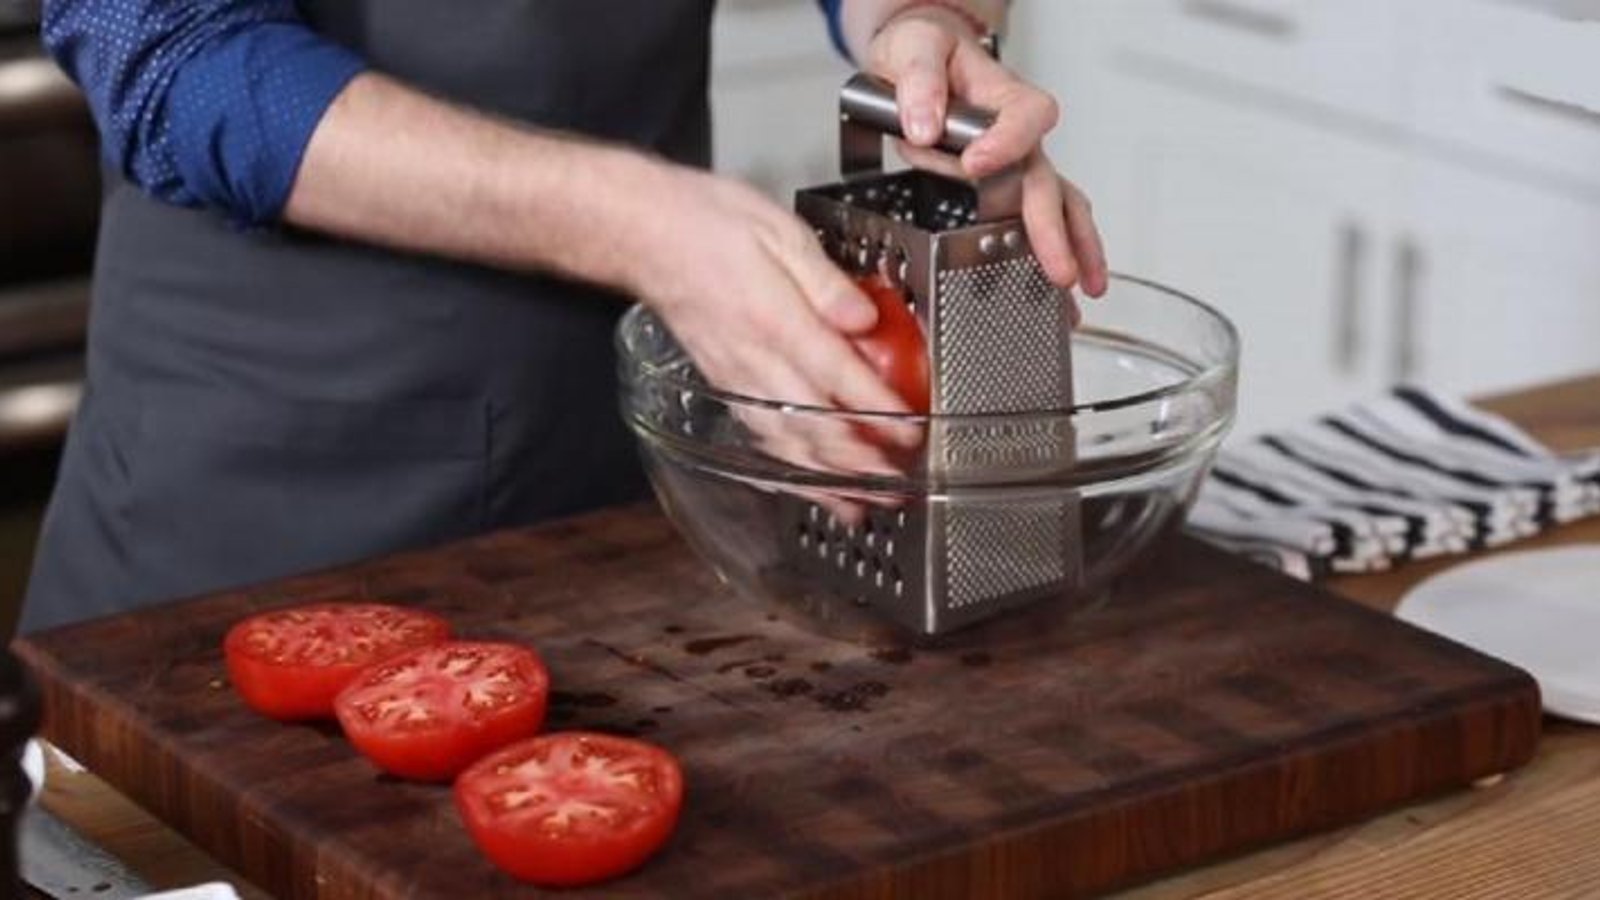 Il râpe des tomates fraîches sur une râpe à fromage! Maintenant, gardez l'oeil sur le bol! 